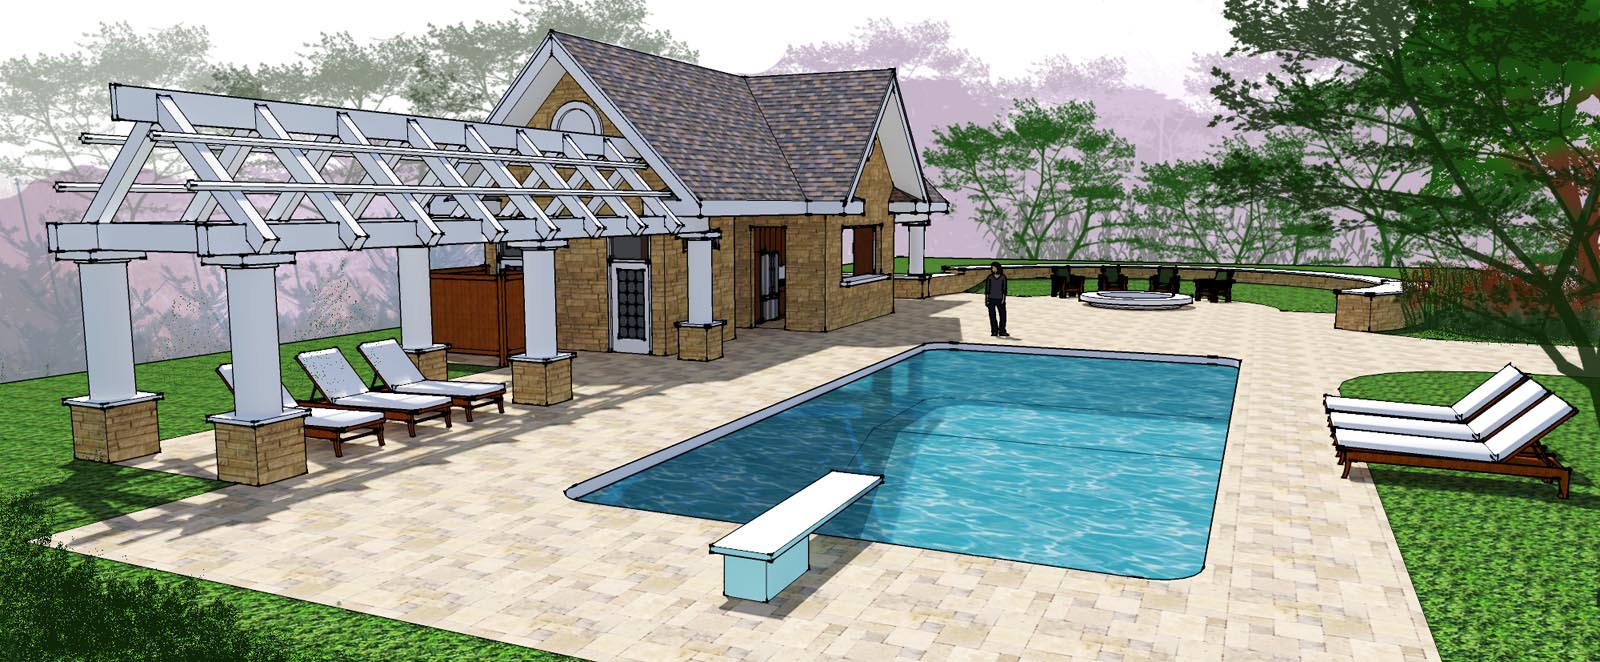 Pool House rendered 3.jpg